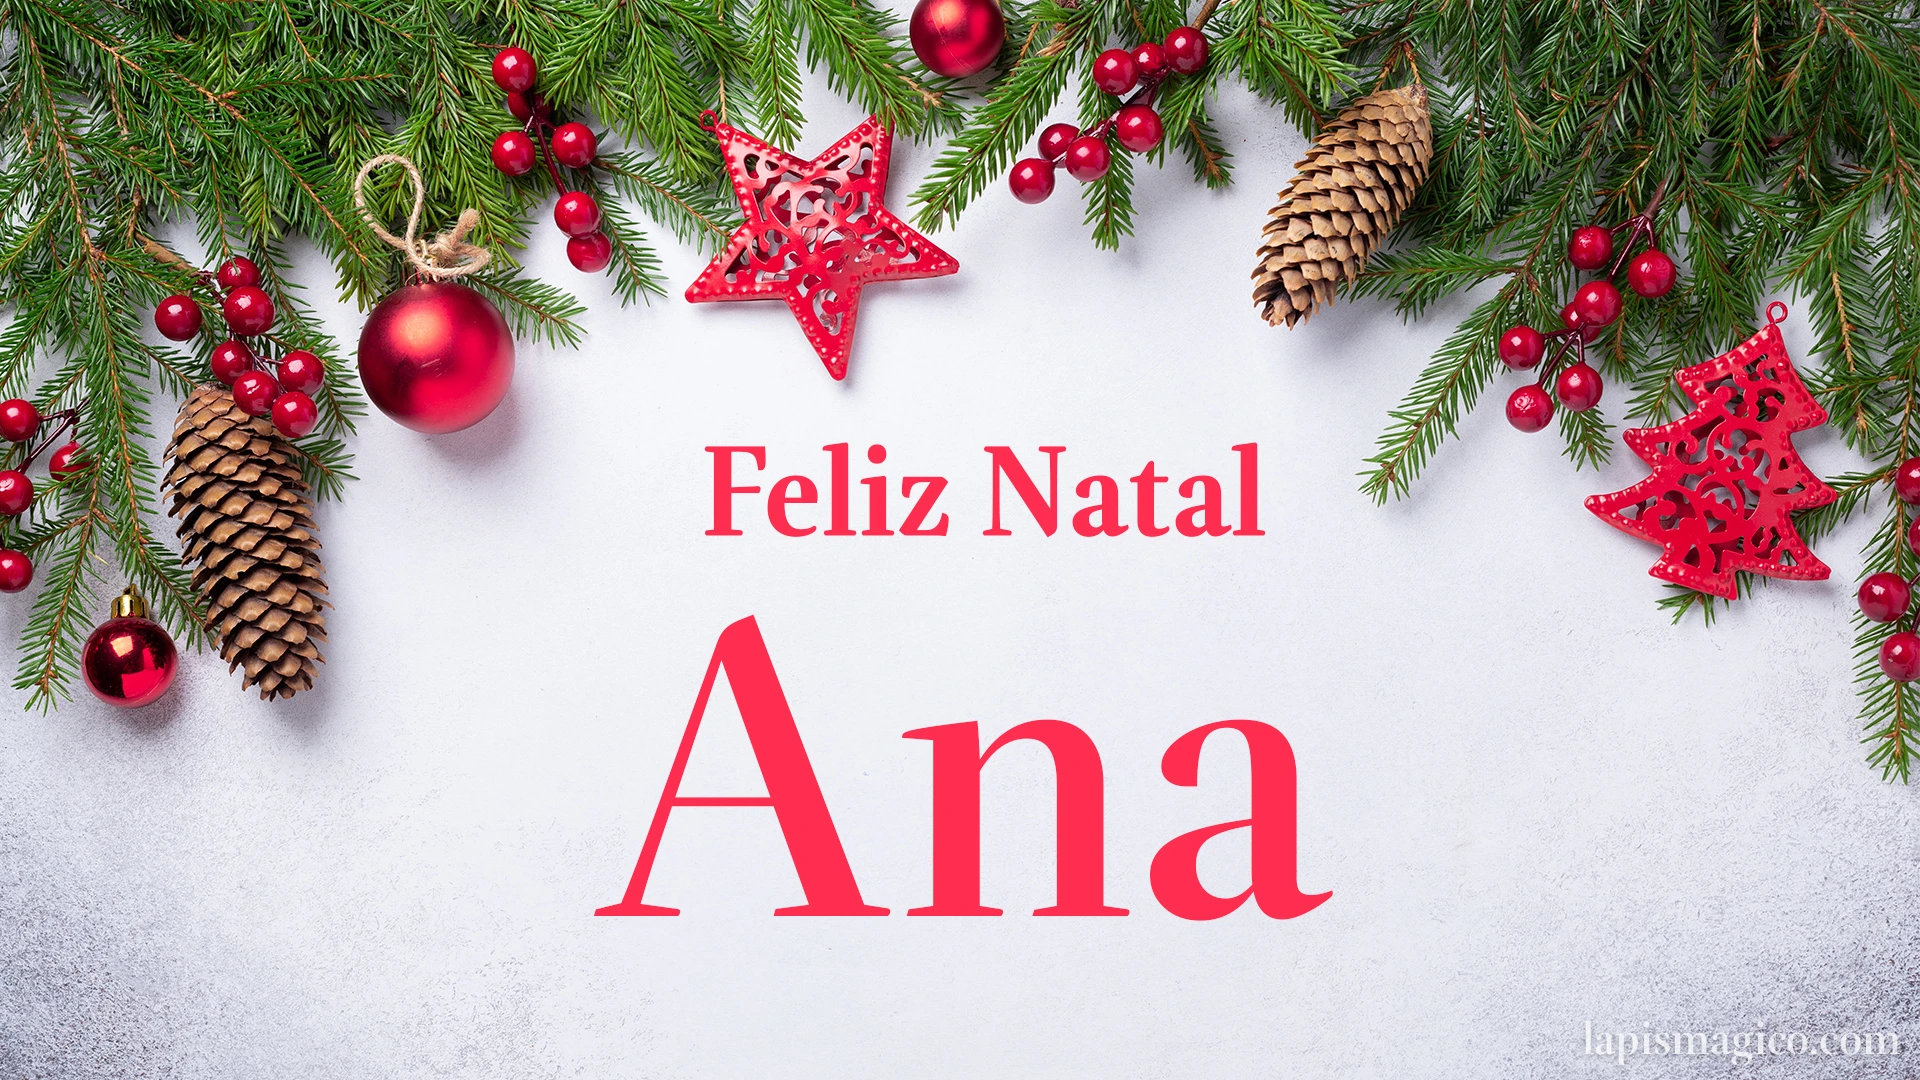 Oh Ana, cinco postais de Feliz Natal Postal com o teu nome